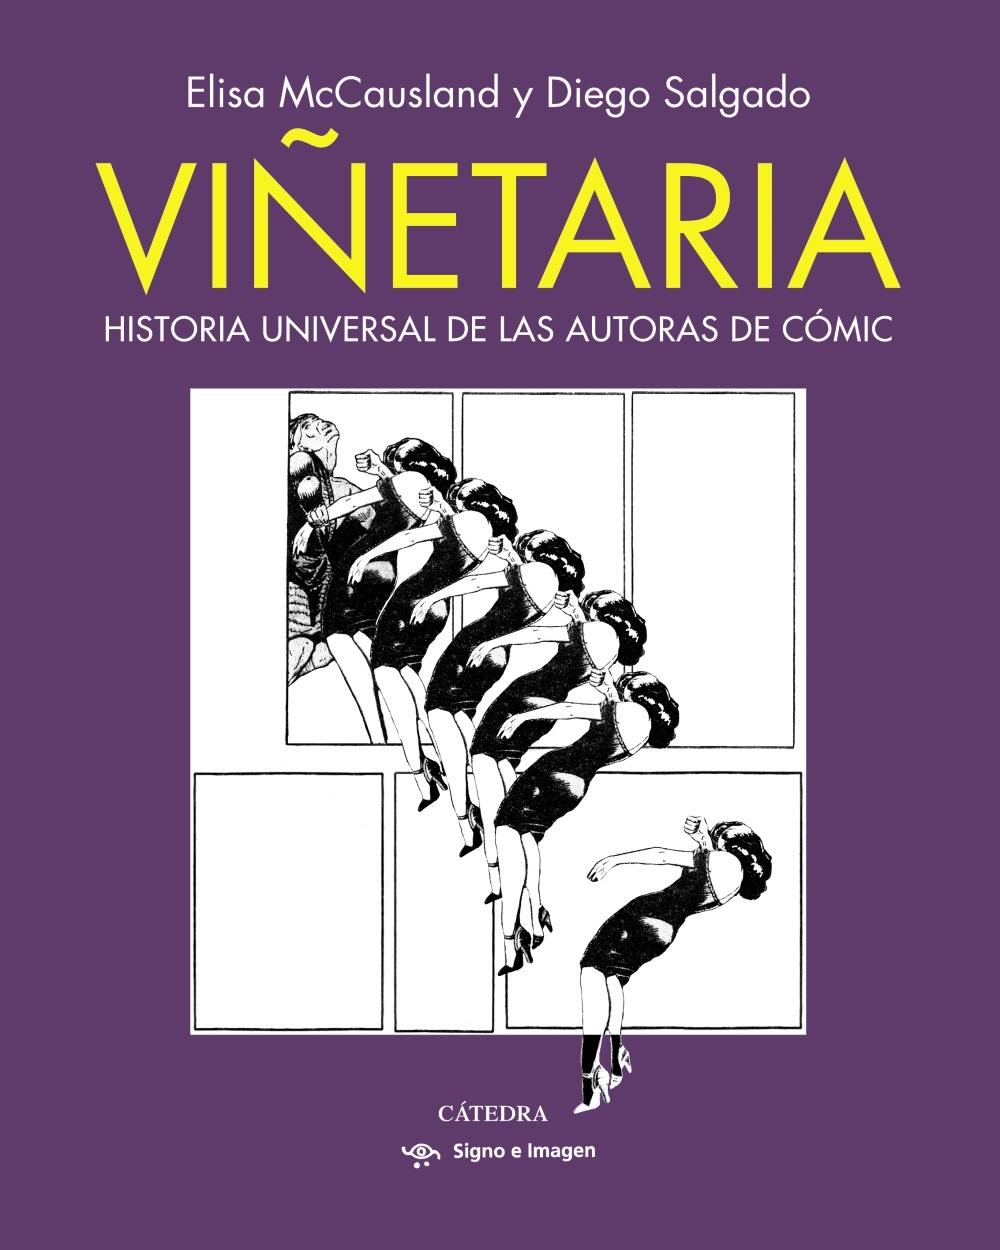 VIÑETARIA "HISTORIA UNIVERSAL DE LAS AUTORAS DE COMIC"